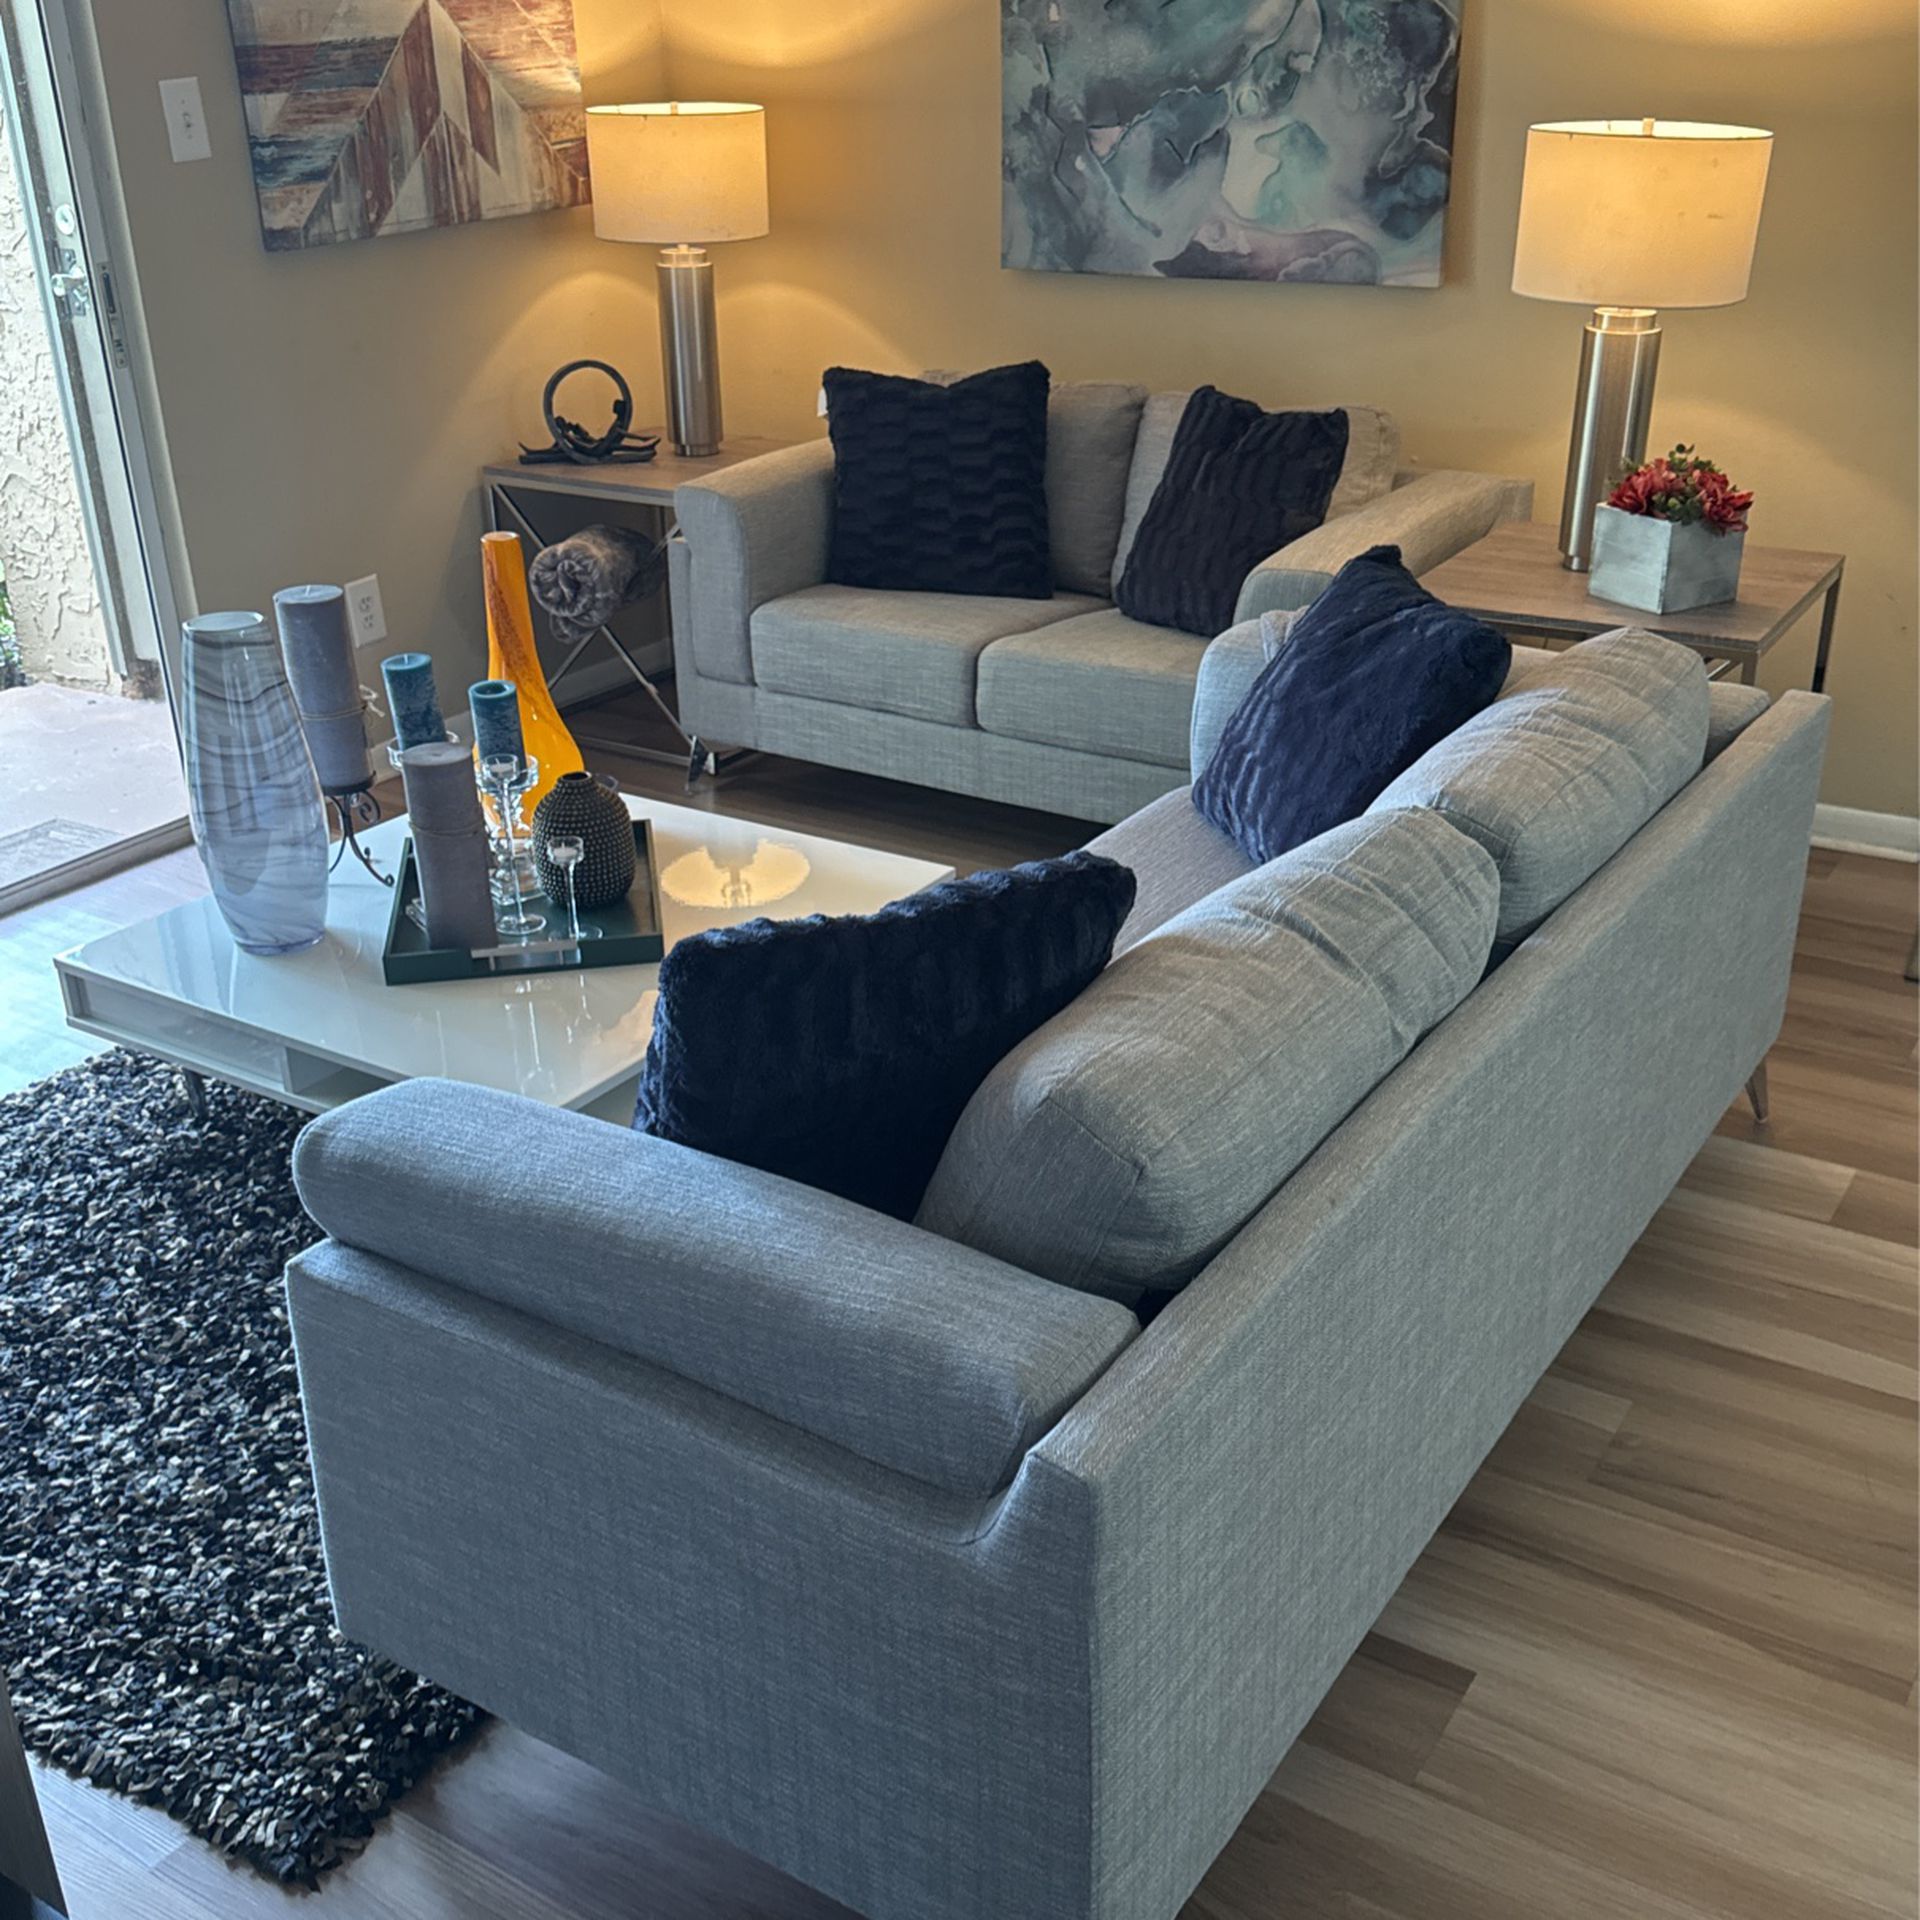 Brand New Living Room Set. Sofa/ Loveseat Only!